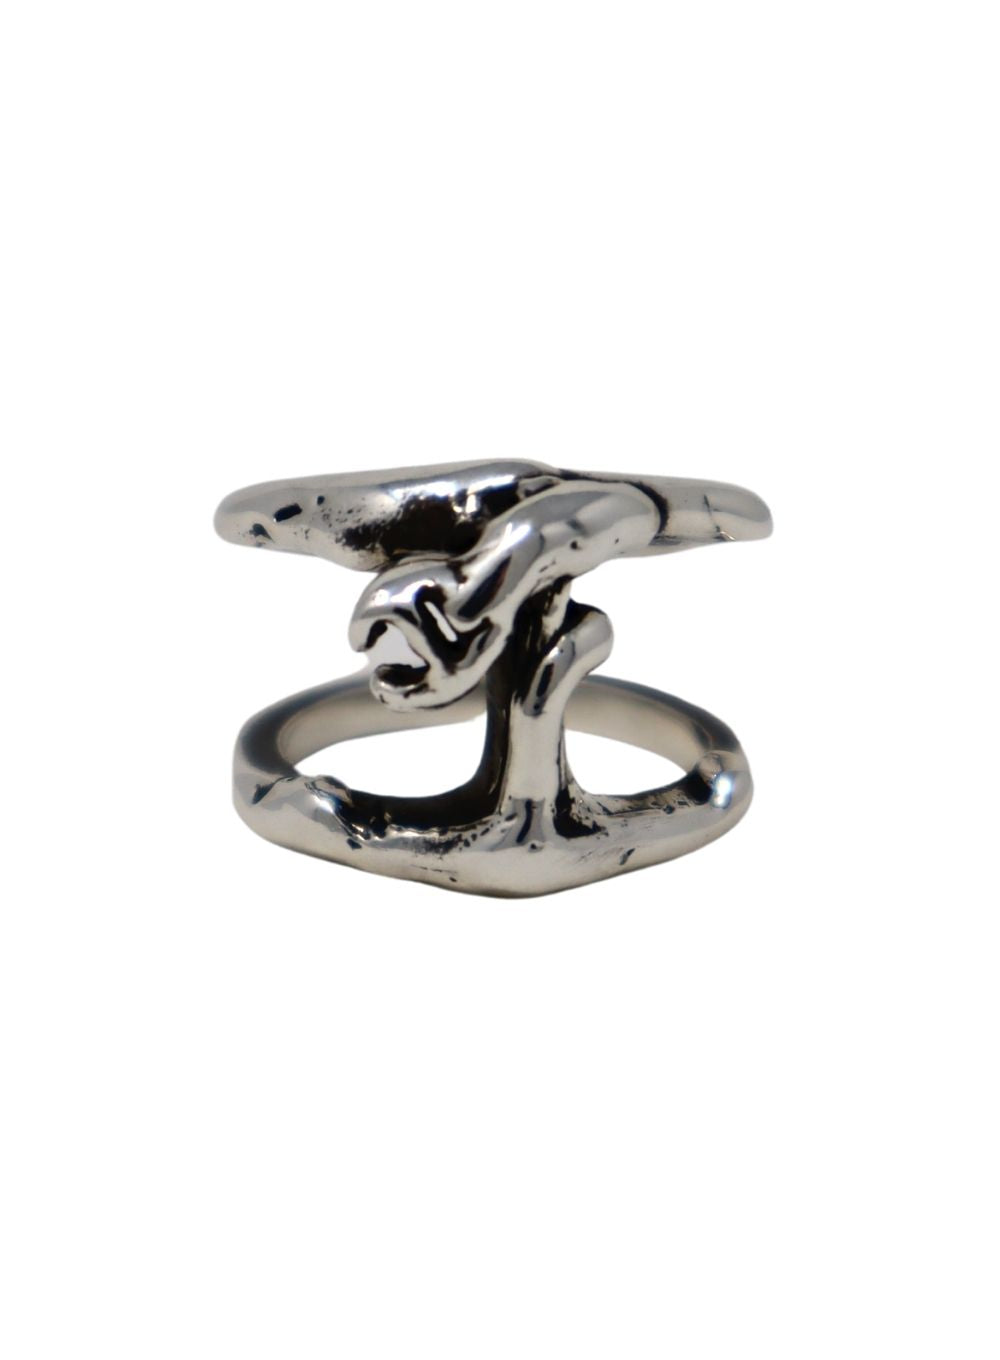 HOORSENBUHS | Sacred Melted Phantom Ring in Sterling Silver